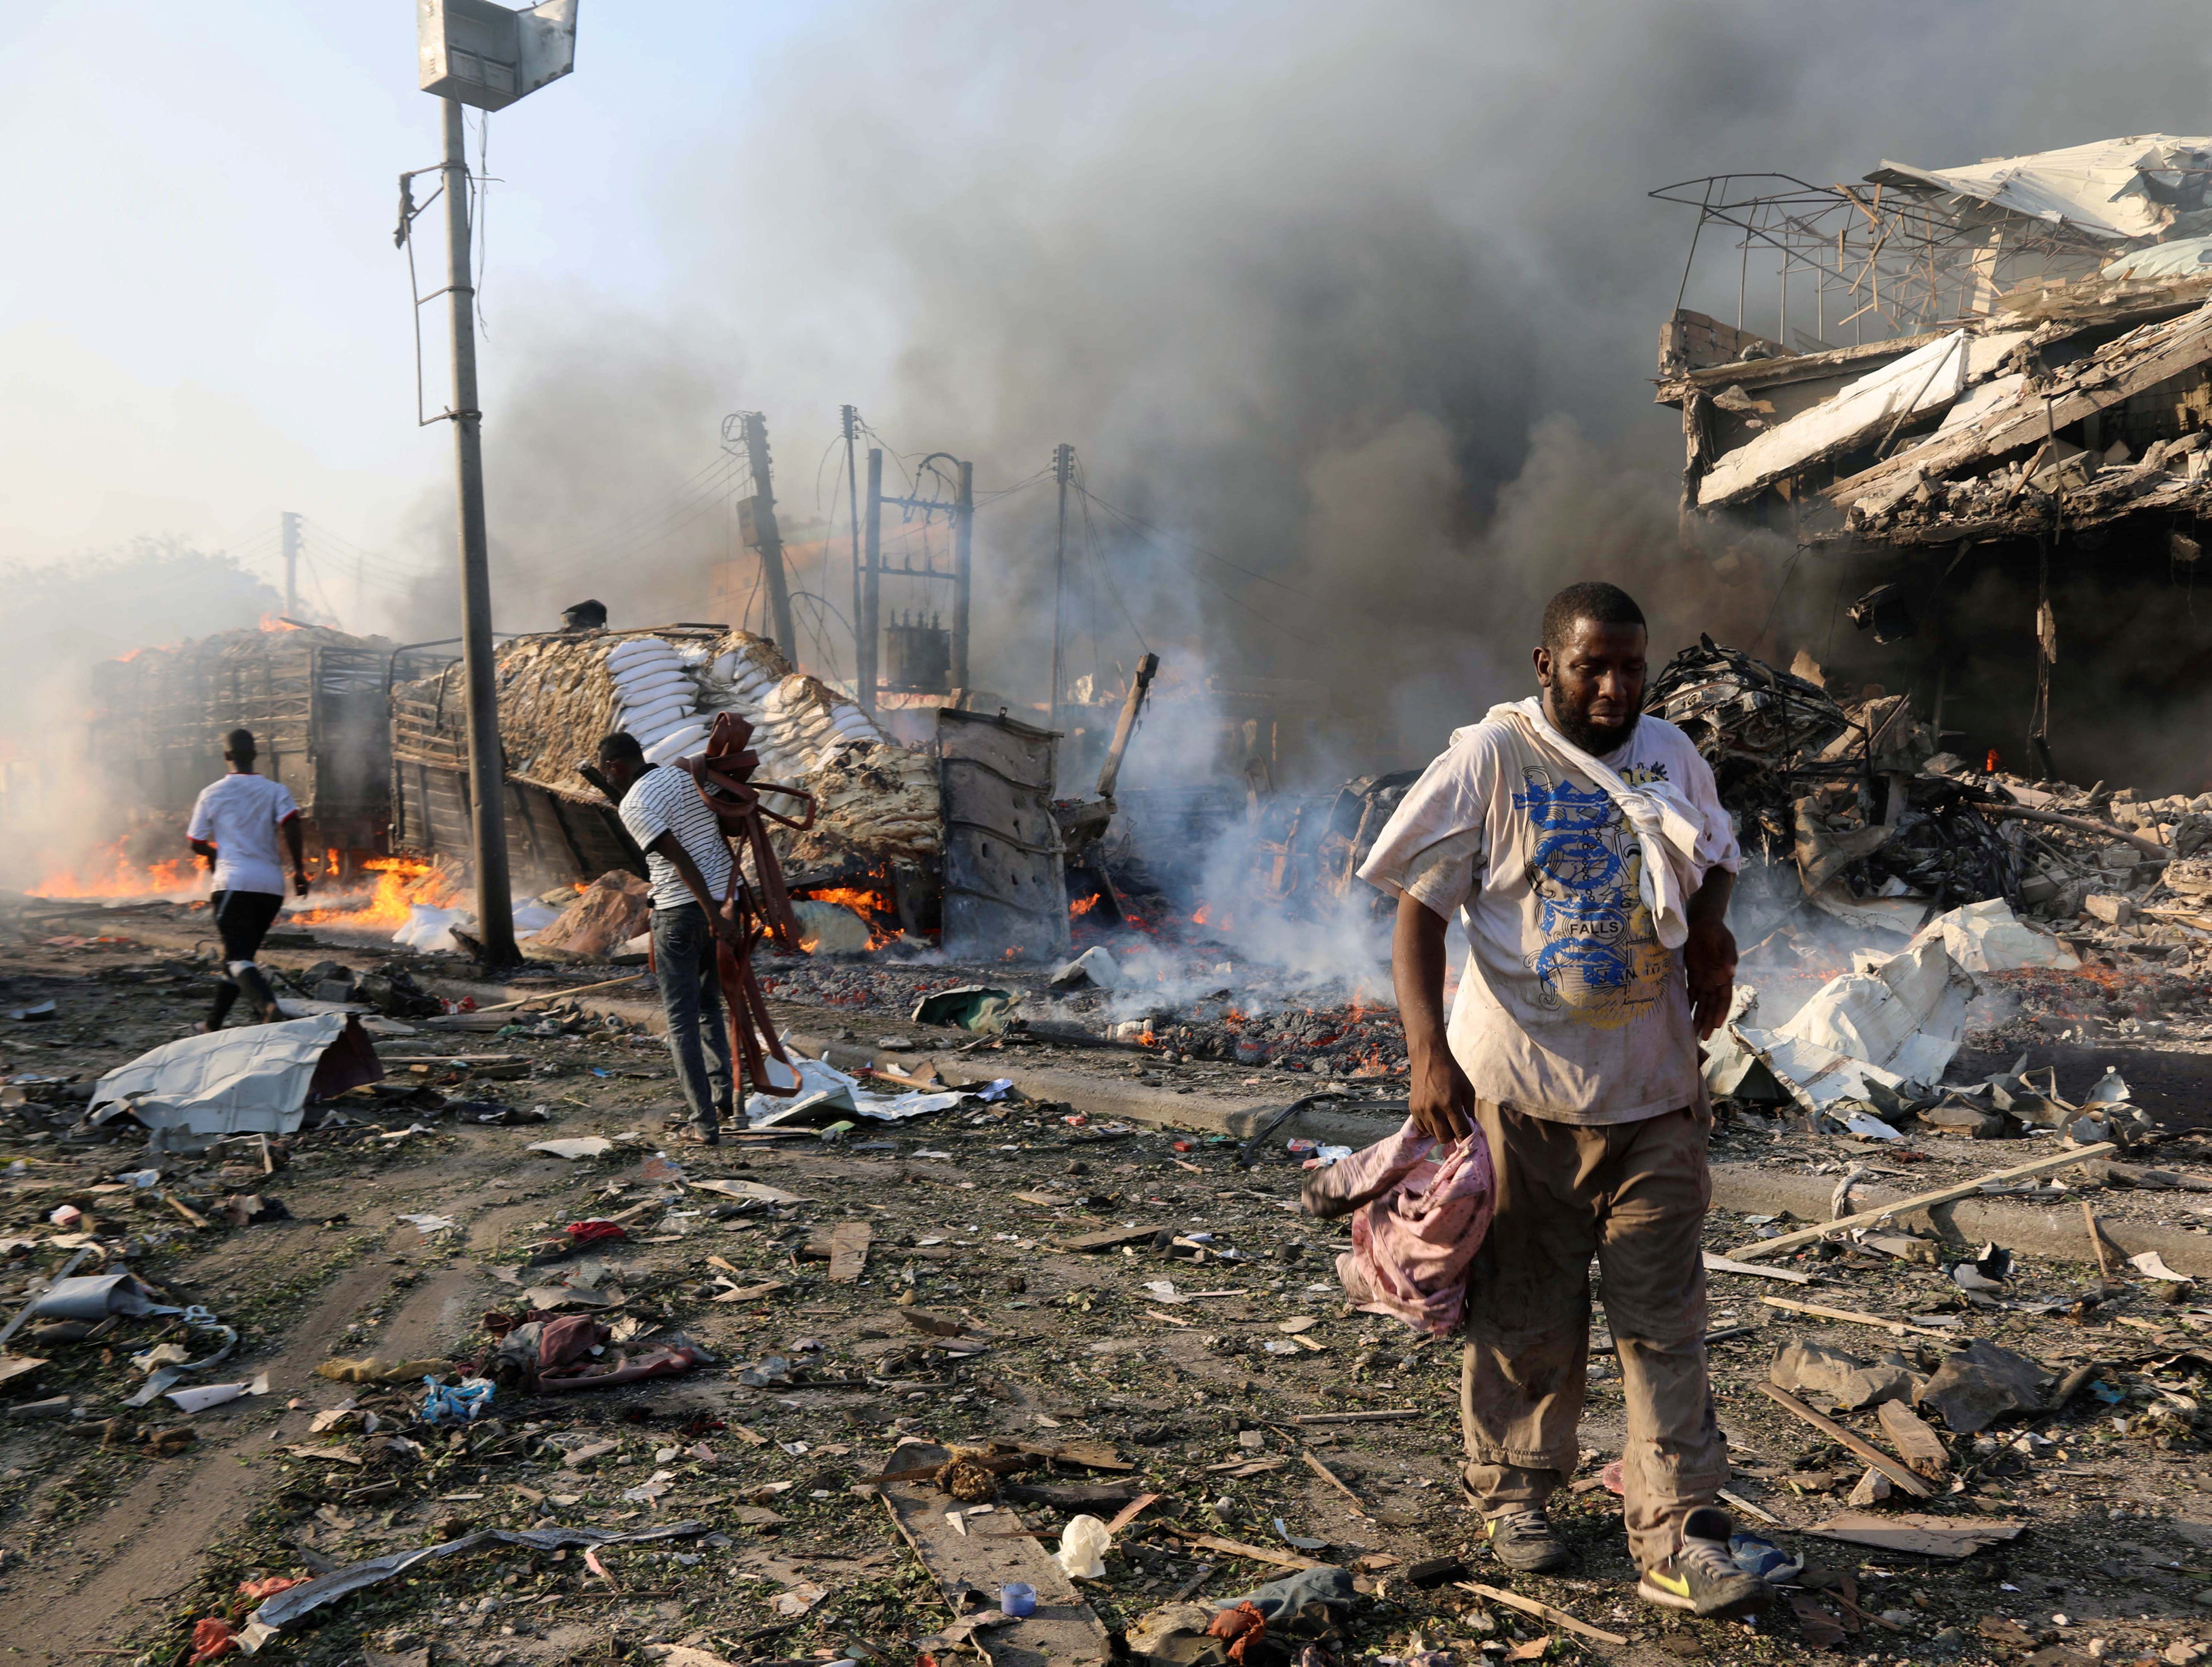 Σομαλία: Ξεπερνούν τους 300 οι νεκροί από βομβιστική επίθεση [Εικόνες]